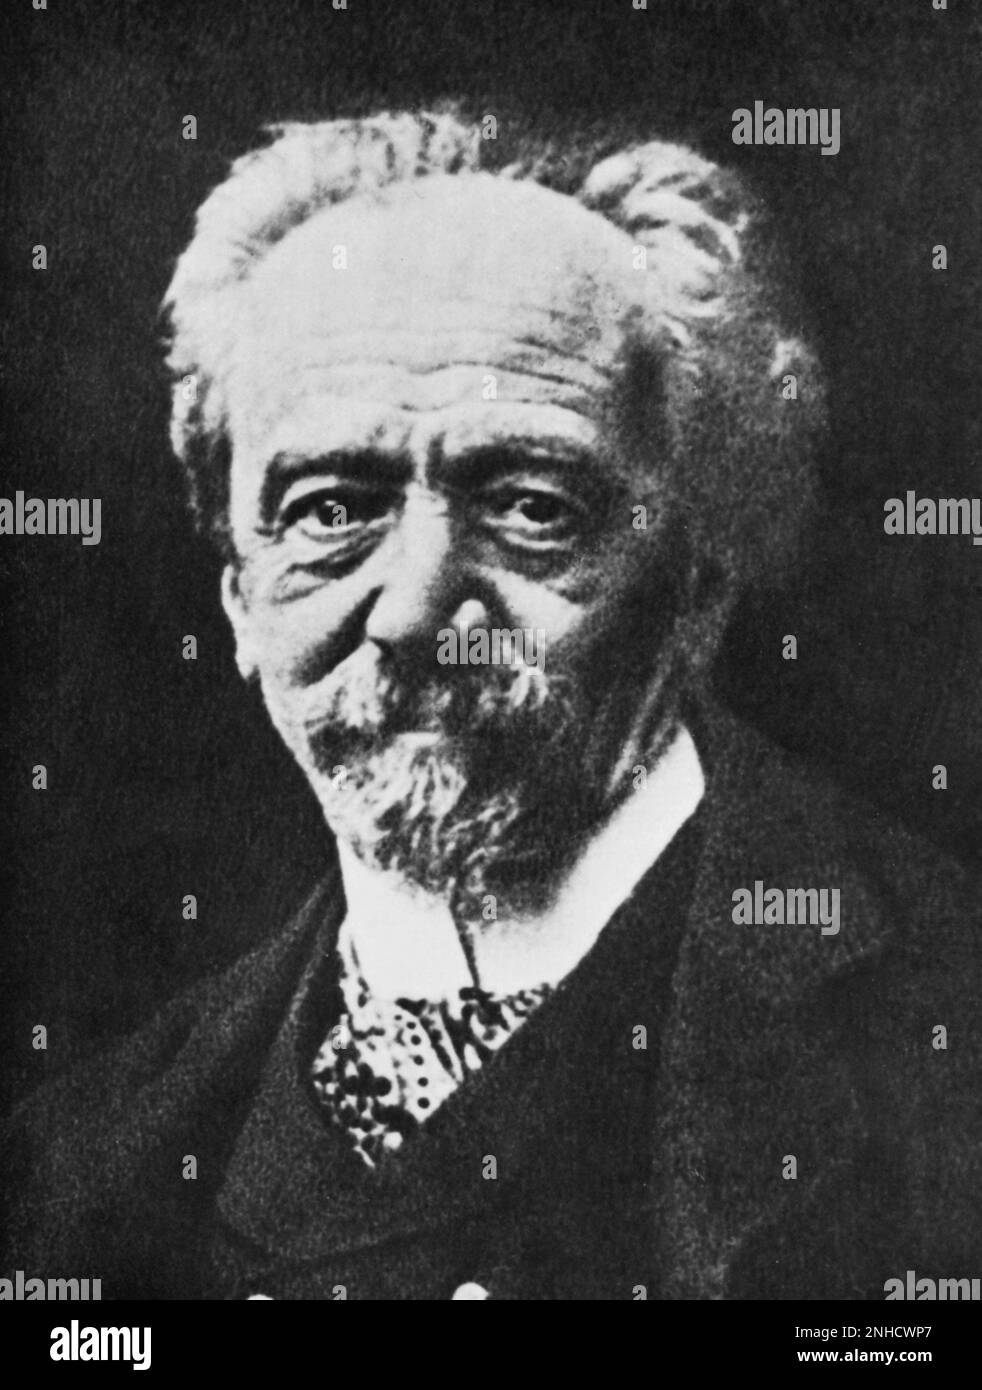 1910 ca. , Torino , Italia : il musicista e compositore italiano GIOVANNI BOLZONI ( 1841 - 1919 ) . Direttore del Conservatorio Giuseppe Verdi a Torino dal 1887 al 1916 - MUSICA - COMPOSITORE - OPERA LIRICA - CLASSICA - CLASSICA - MUSICA ---- Archivio GBB Foto Stock